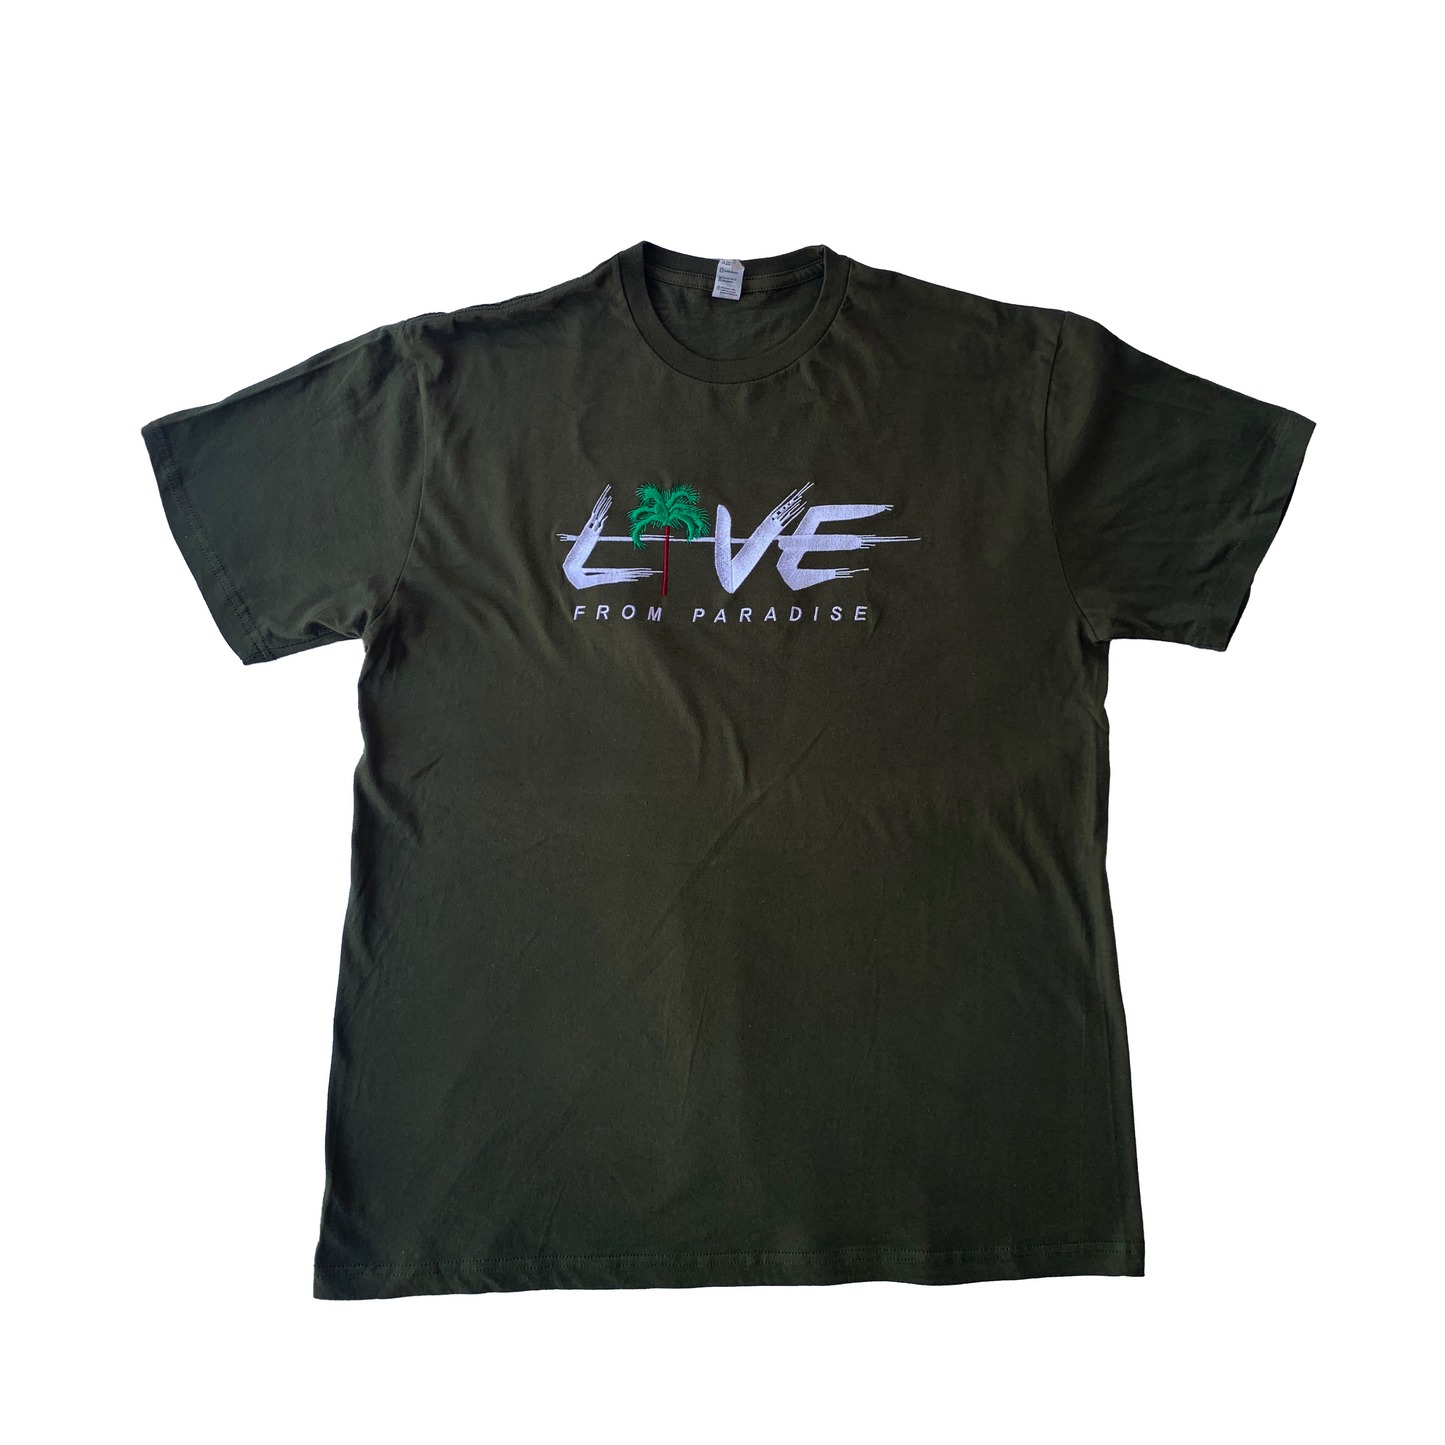 “Olive Oil” Live Shirt